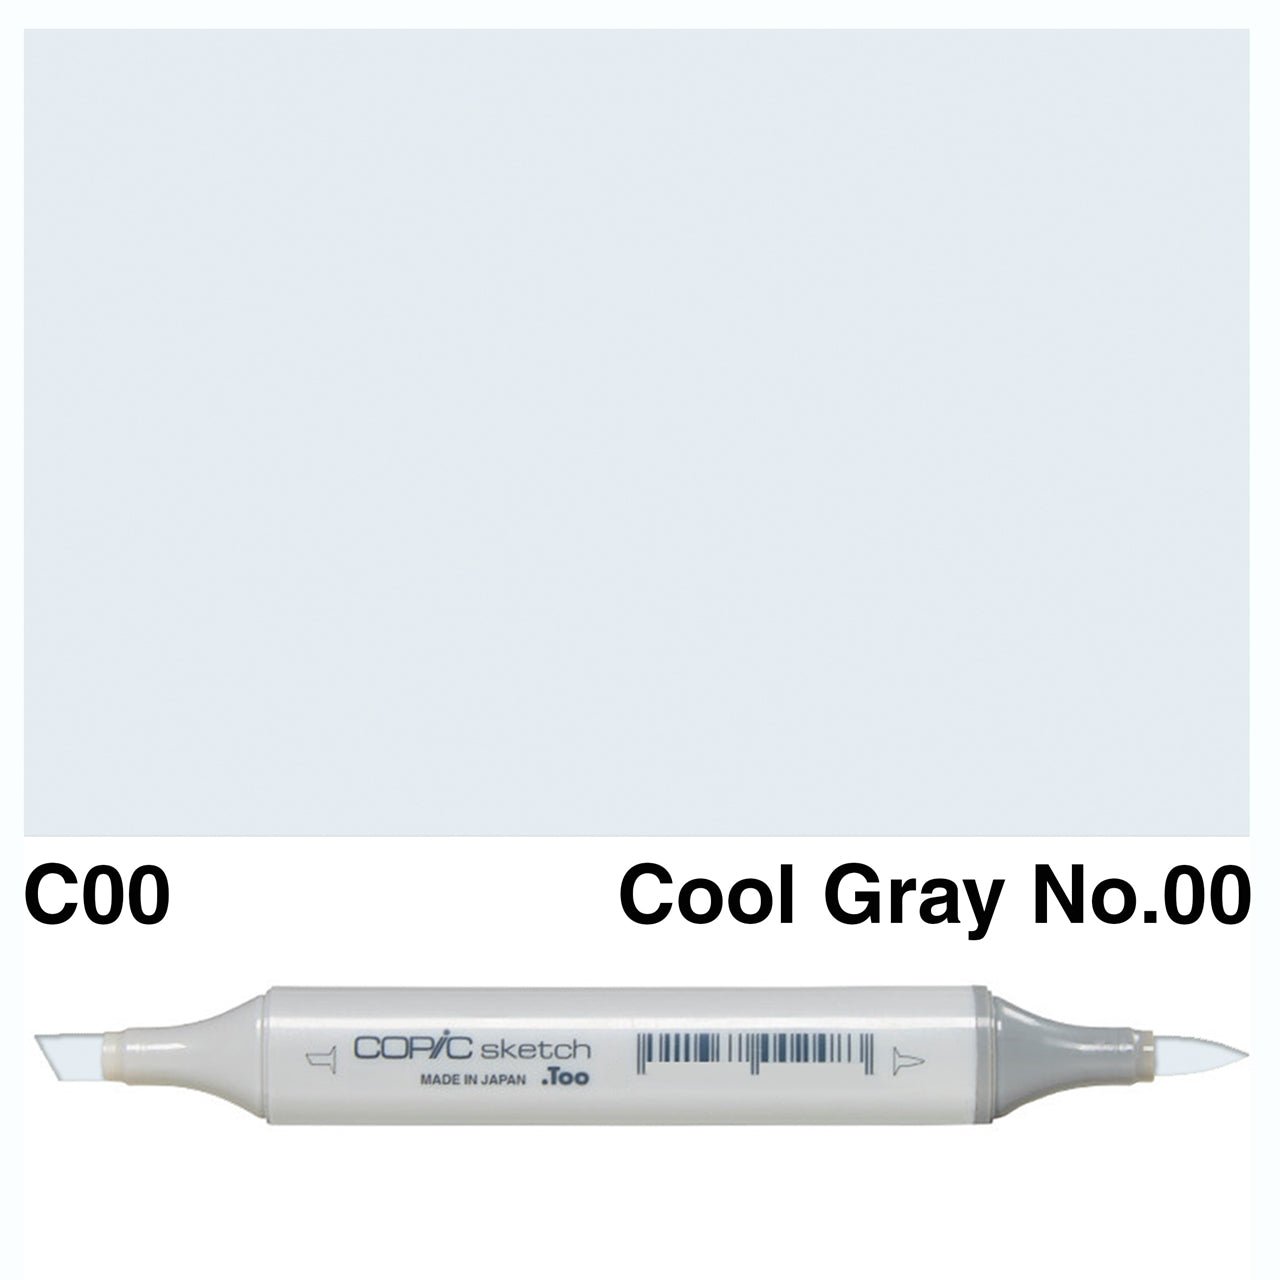 Copic Sketch C00 Cool Gray No.00 - theartshop.com.au